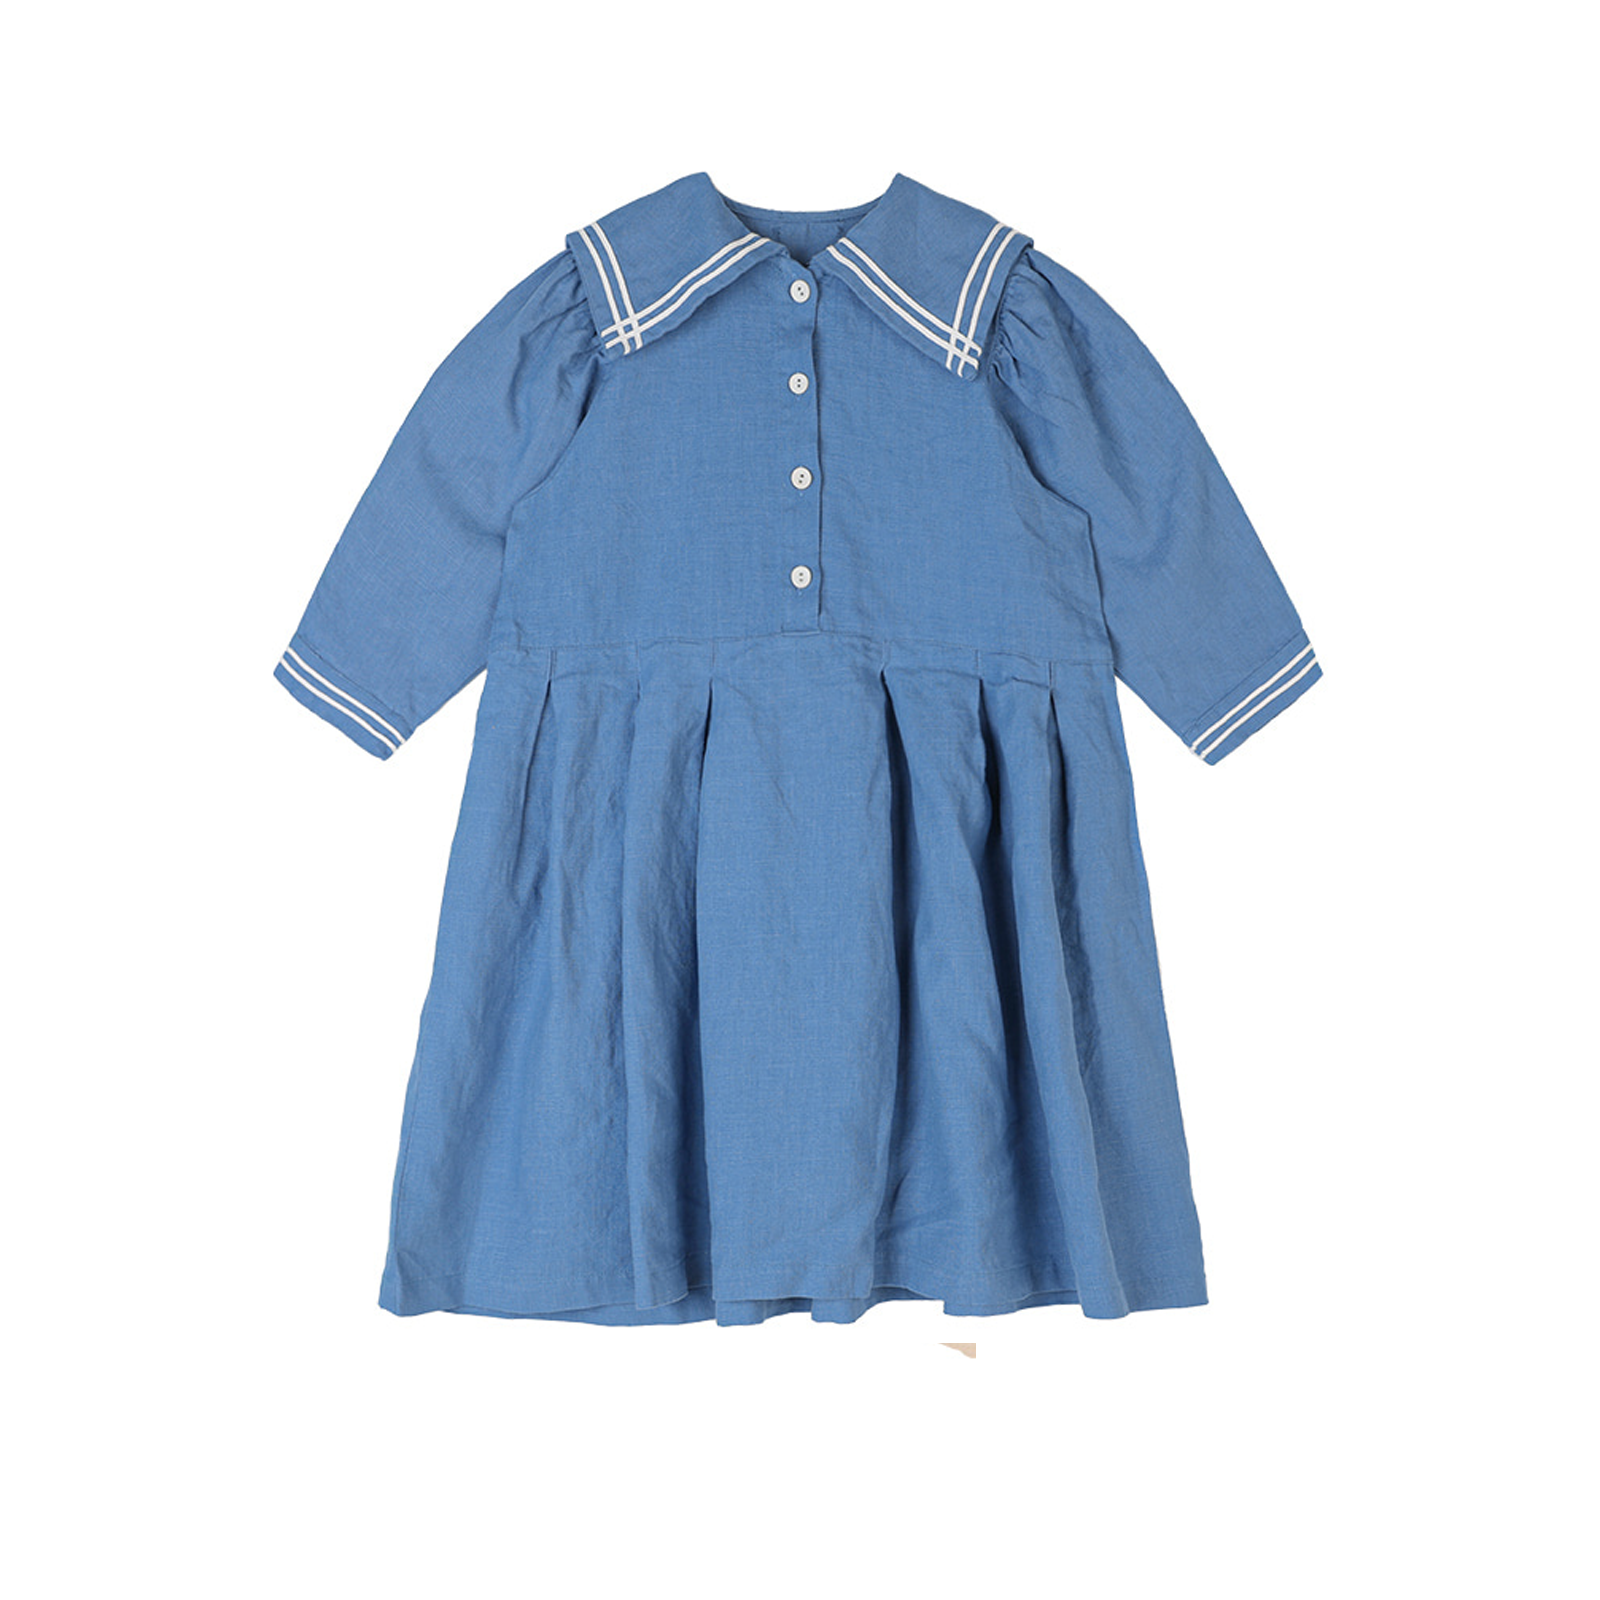 Bien a Bien Linen Cotton Sailor Dress in Blue